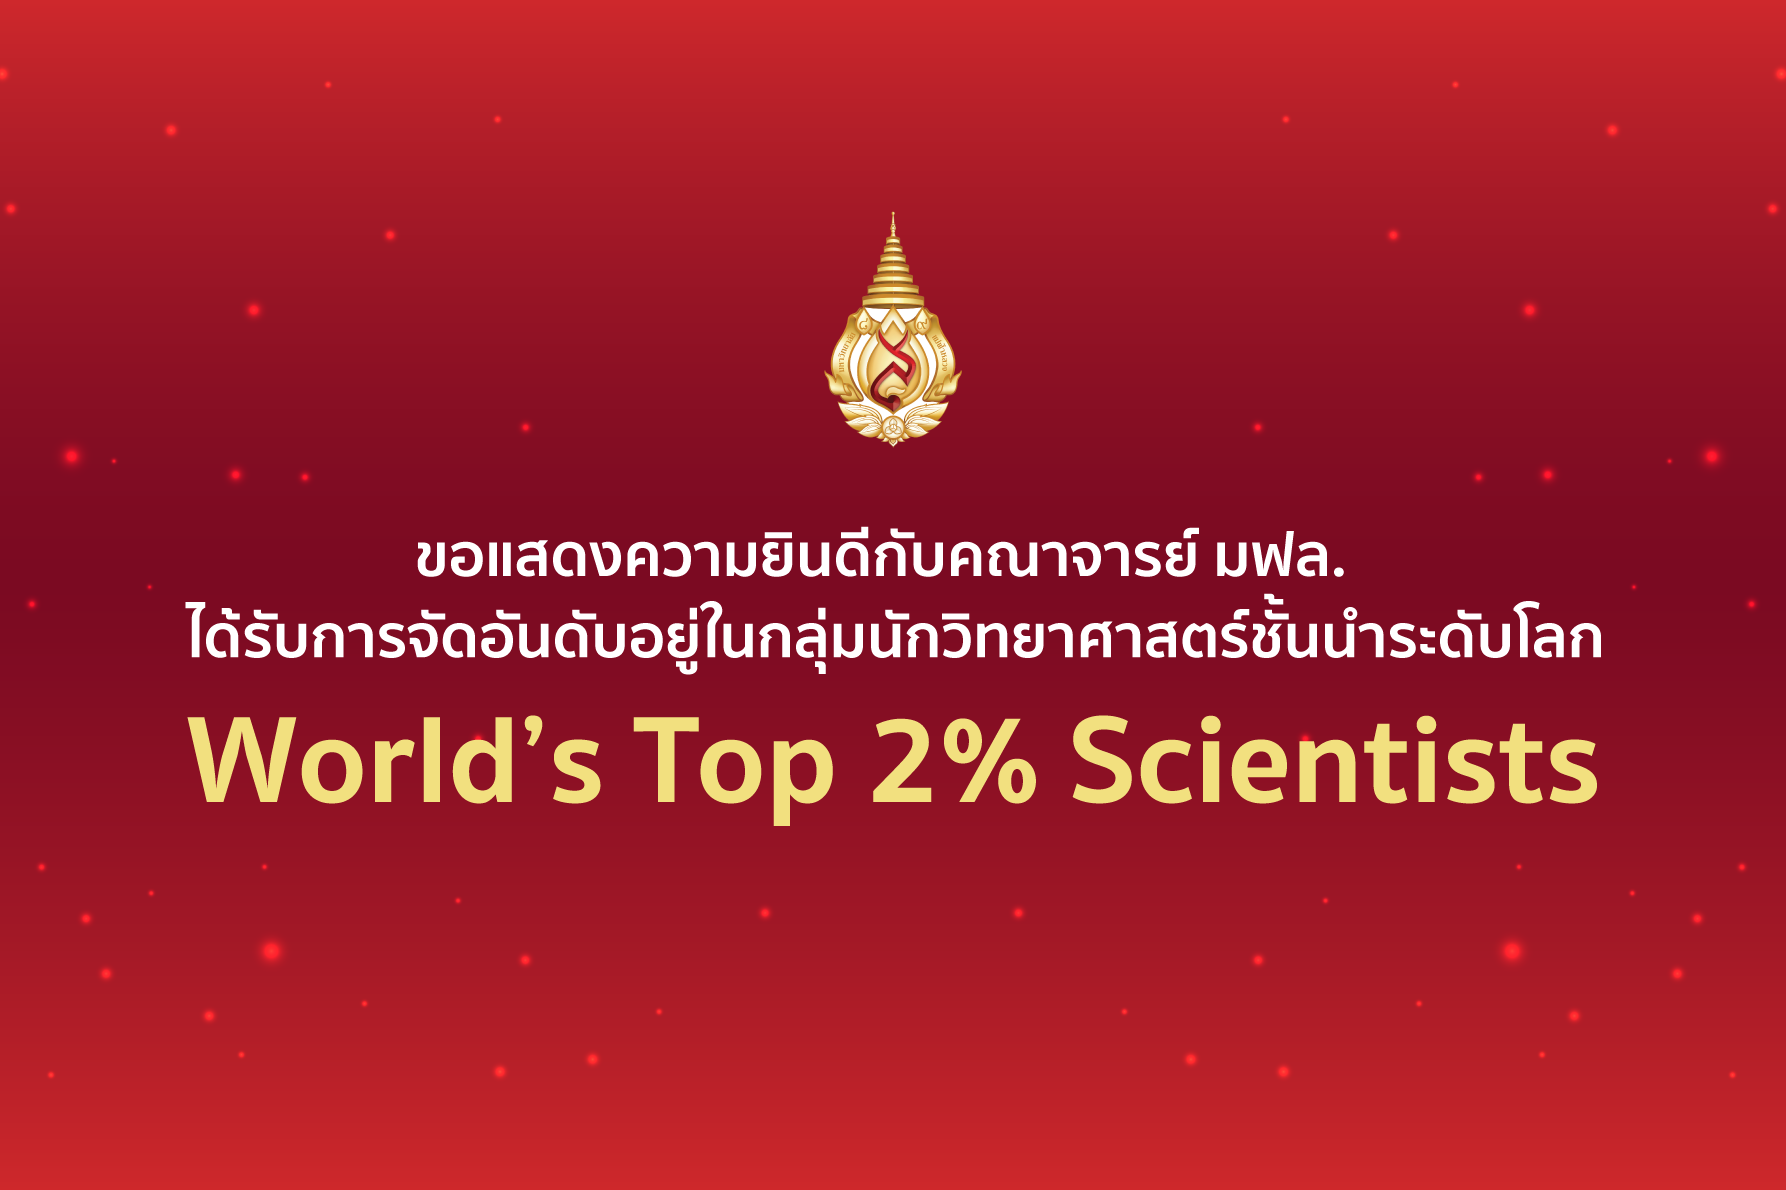 คณาจารย์ มฟล. ได้รับการจัดอันดับอยู่ในกลุ่มนักวิทยาศาสตร์ชั้นนำระดับโลก “World’s Top 2% Scientists” ประจำปี 2022